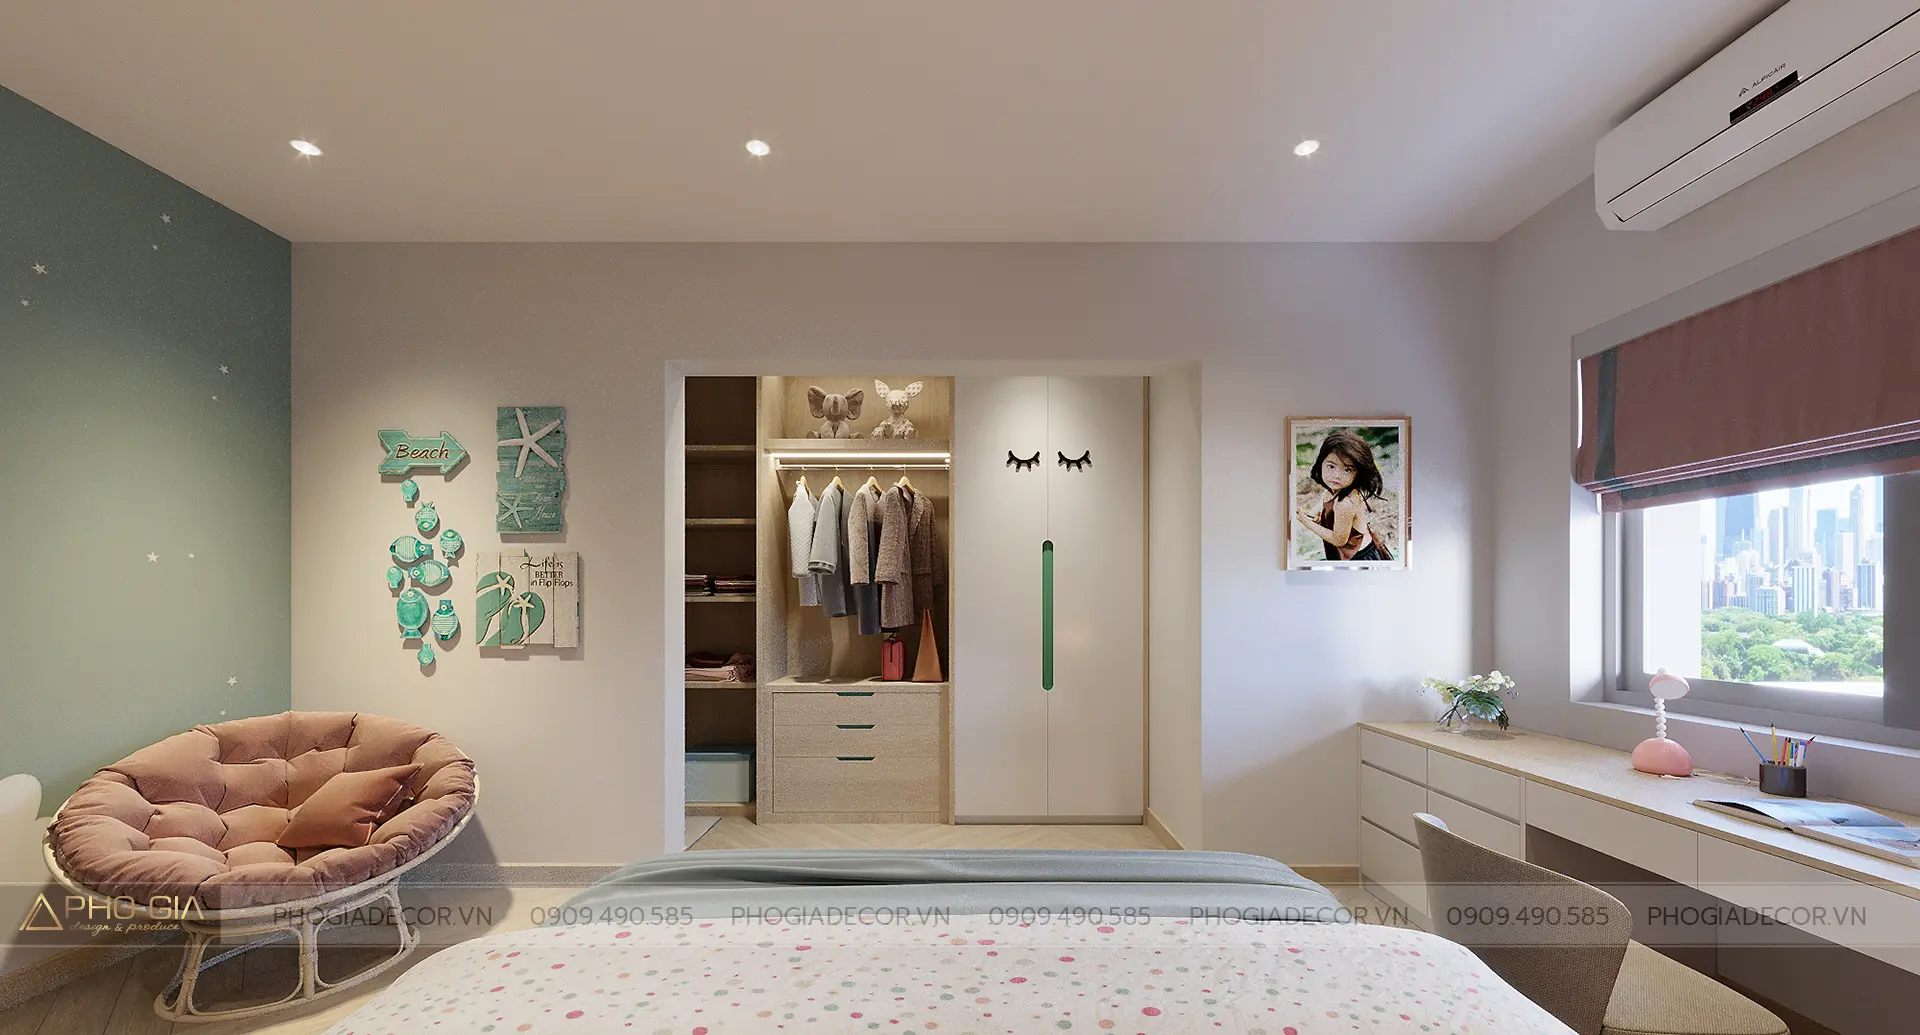 Phòng ngủ cho con với hệ tủ áo đồ rộng rãi